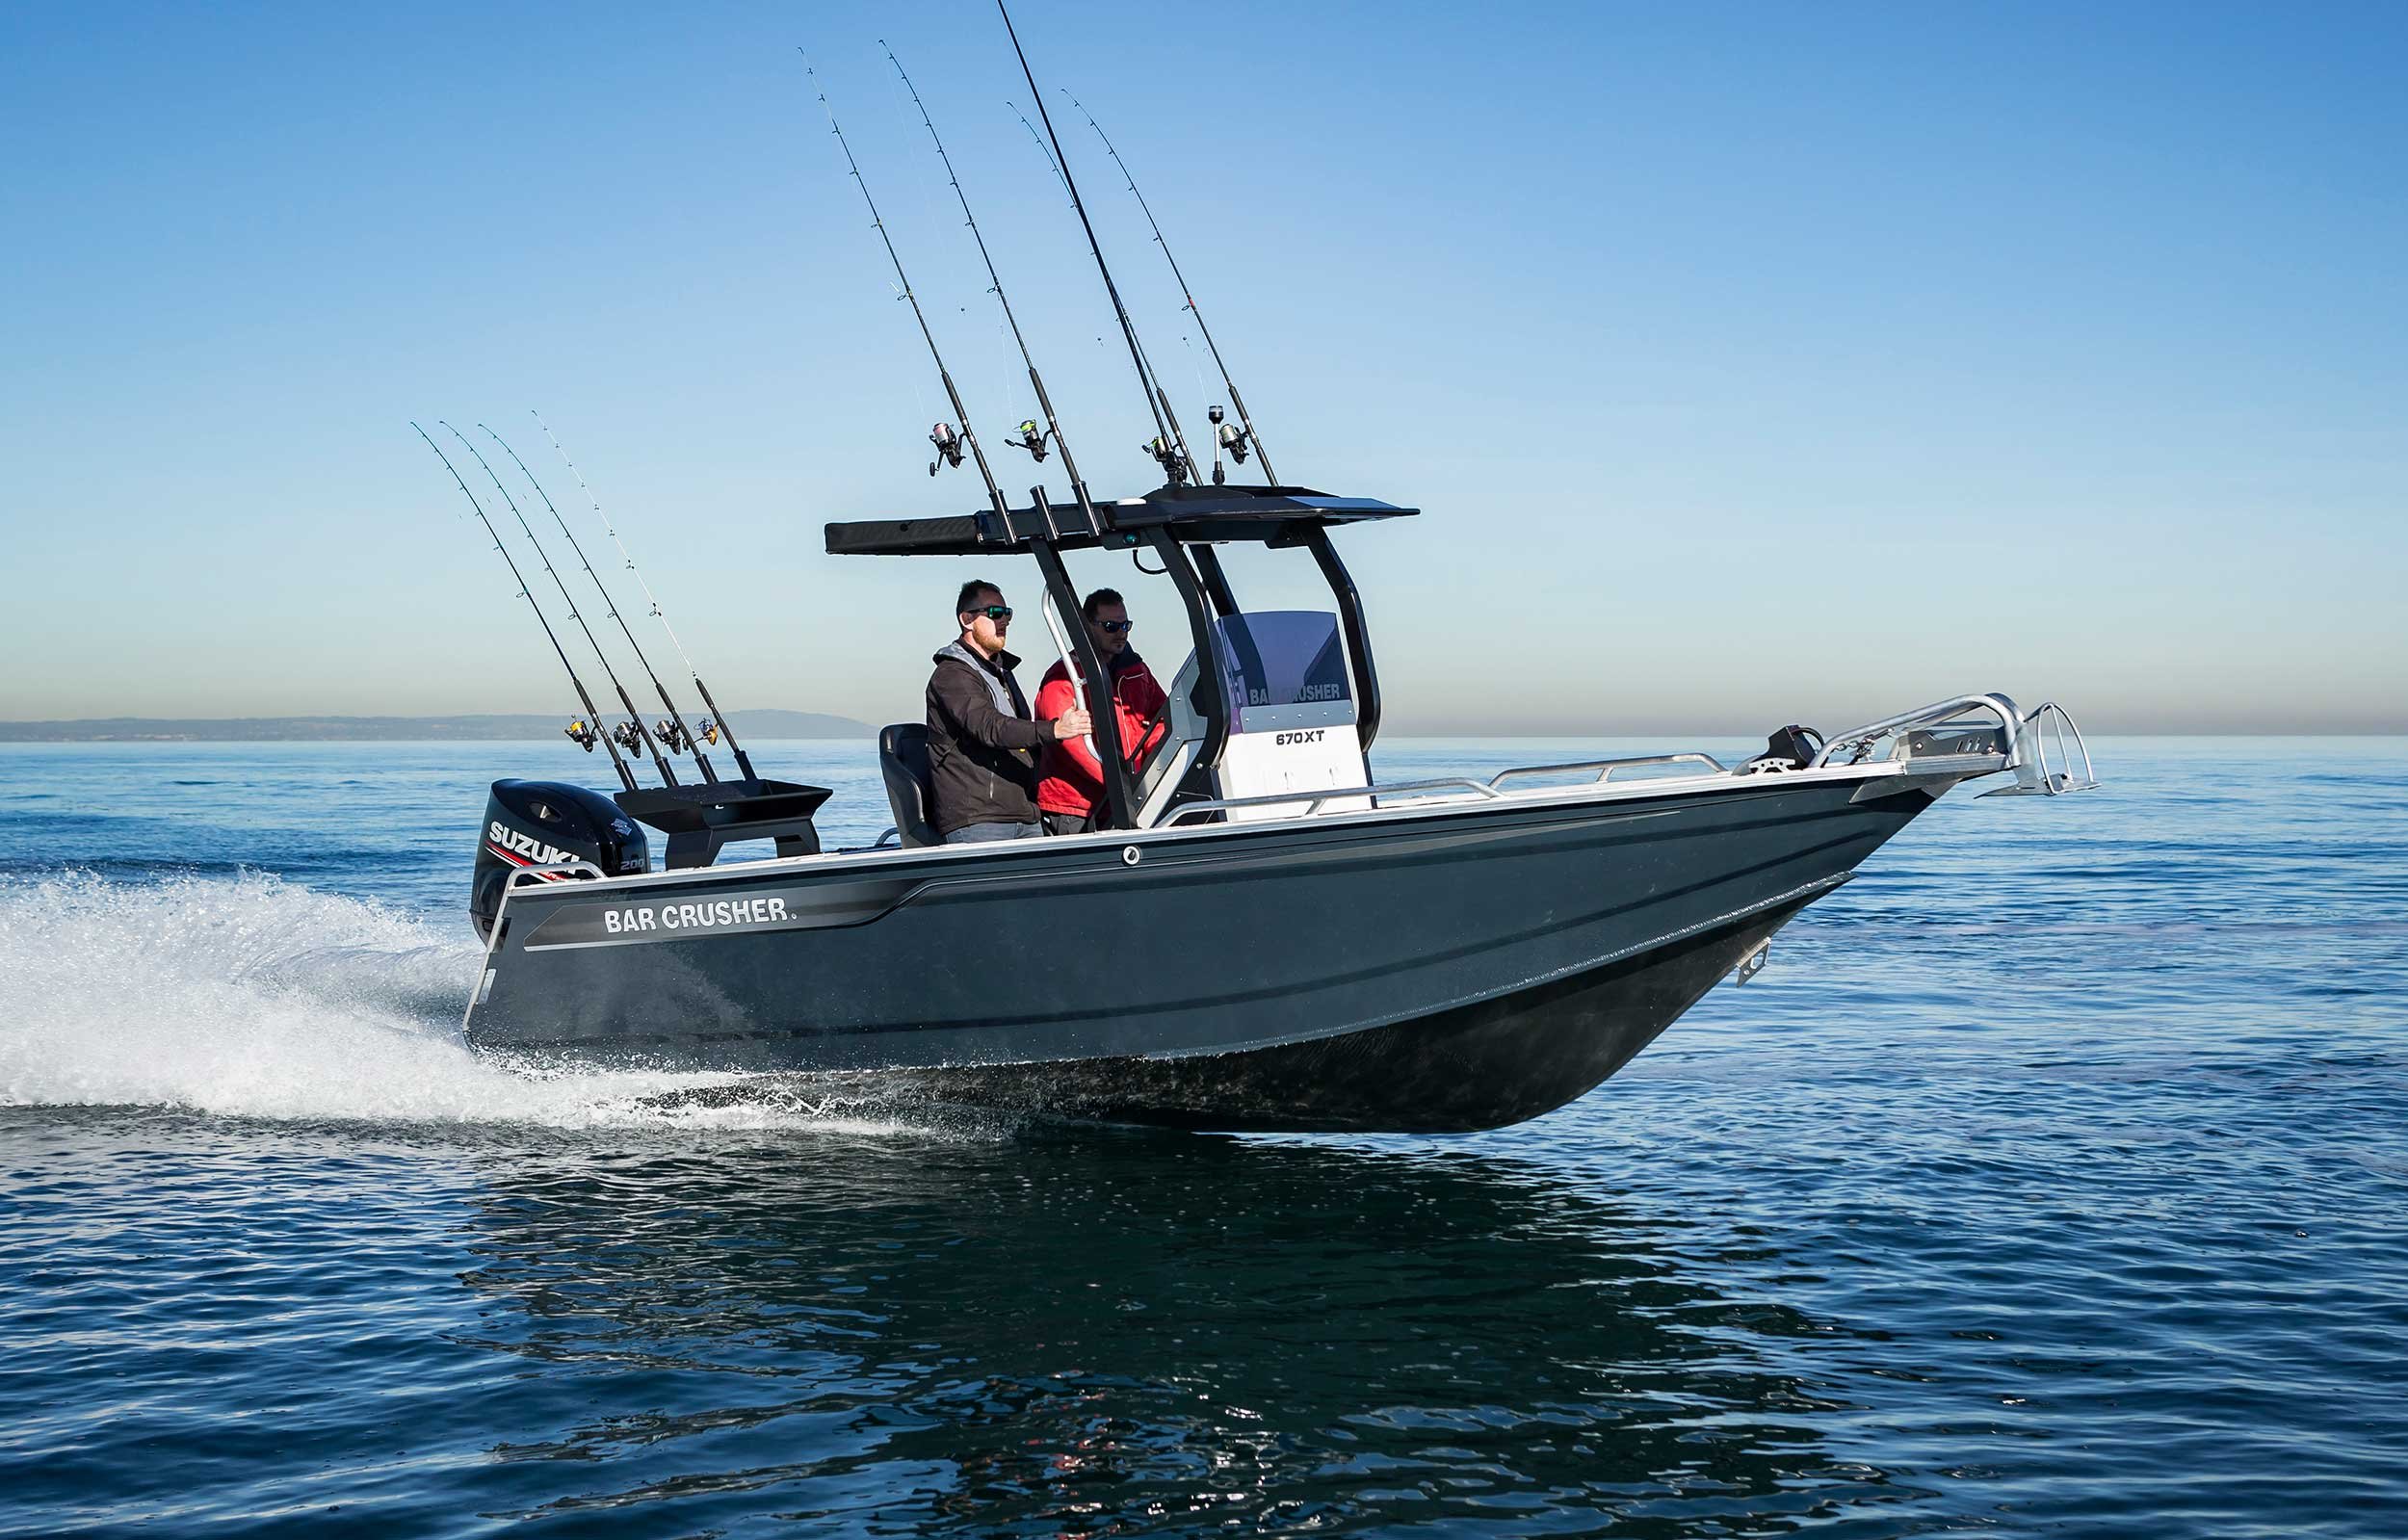 models-bar-crusher-670xt-plate-aluminium-fishing-boat-web-4-1